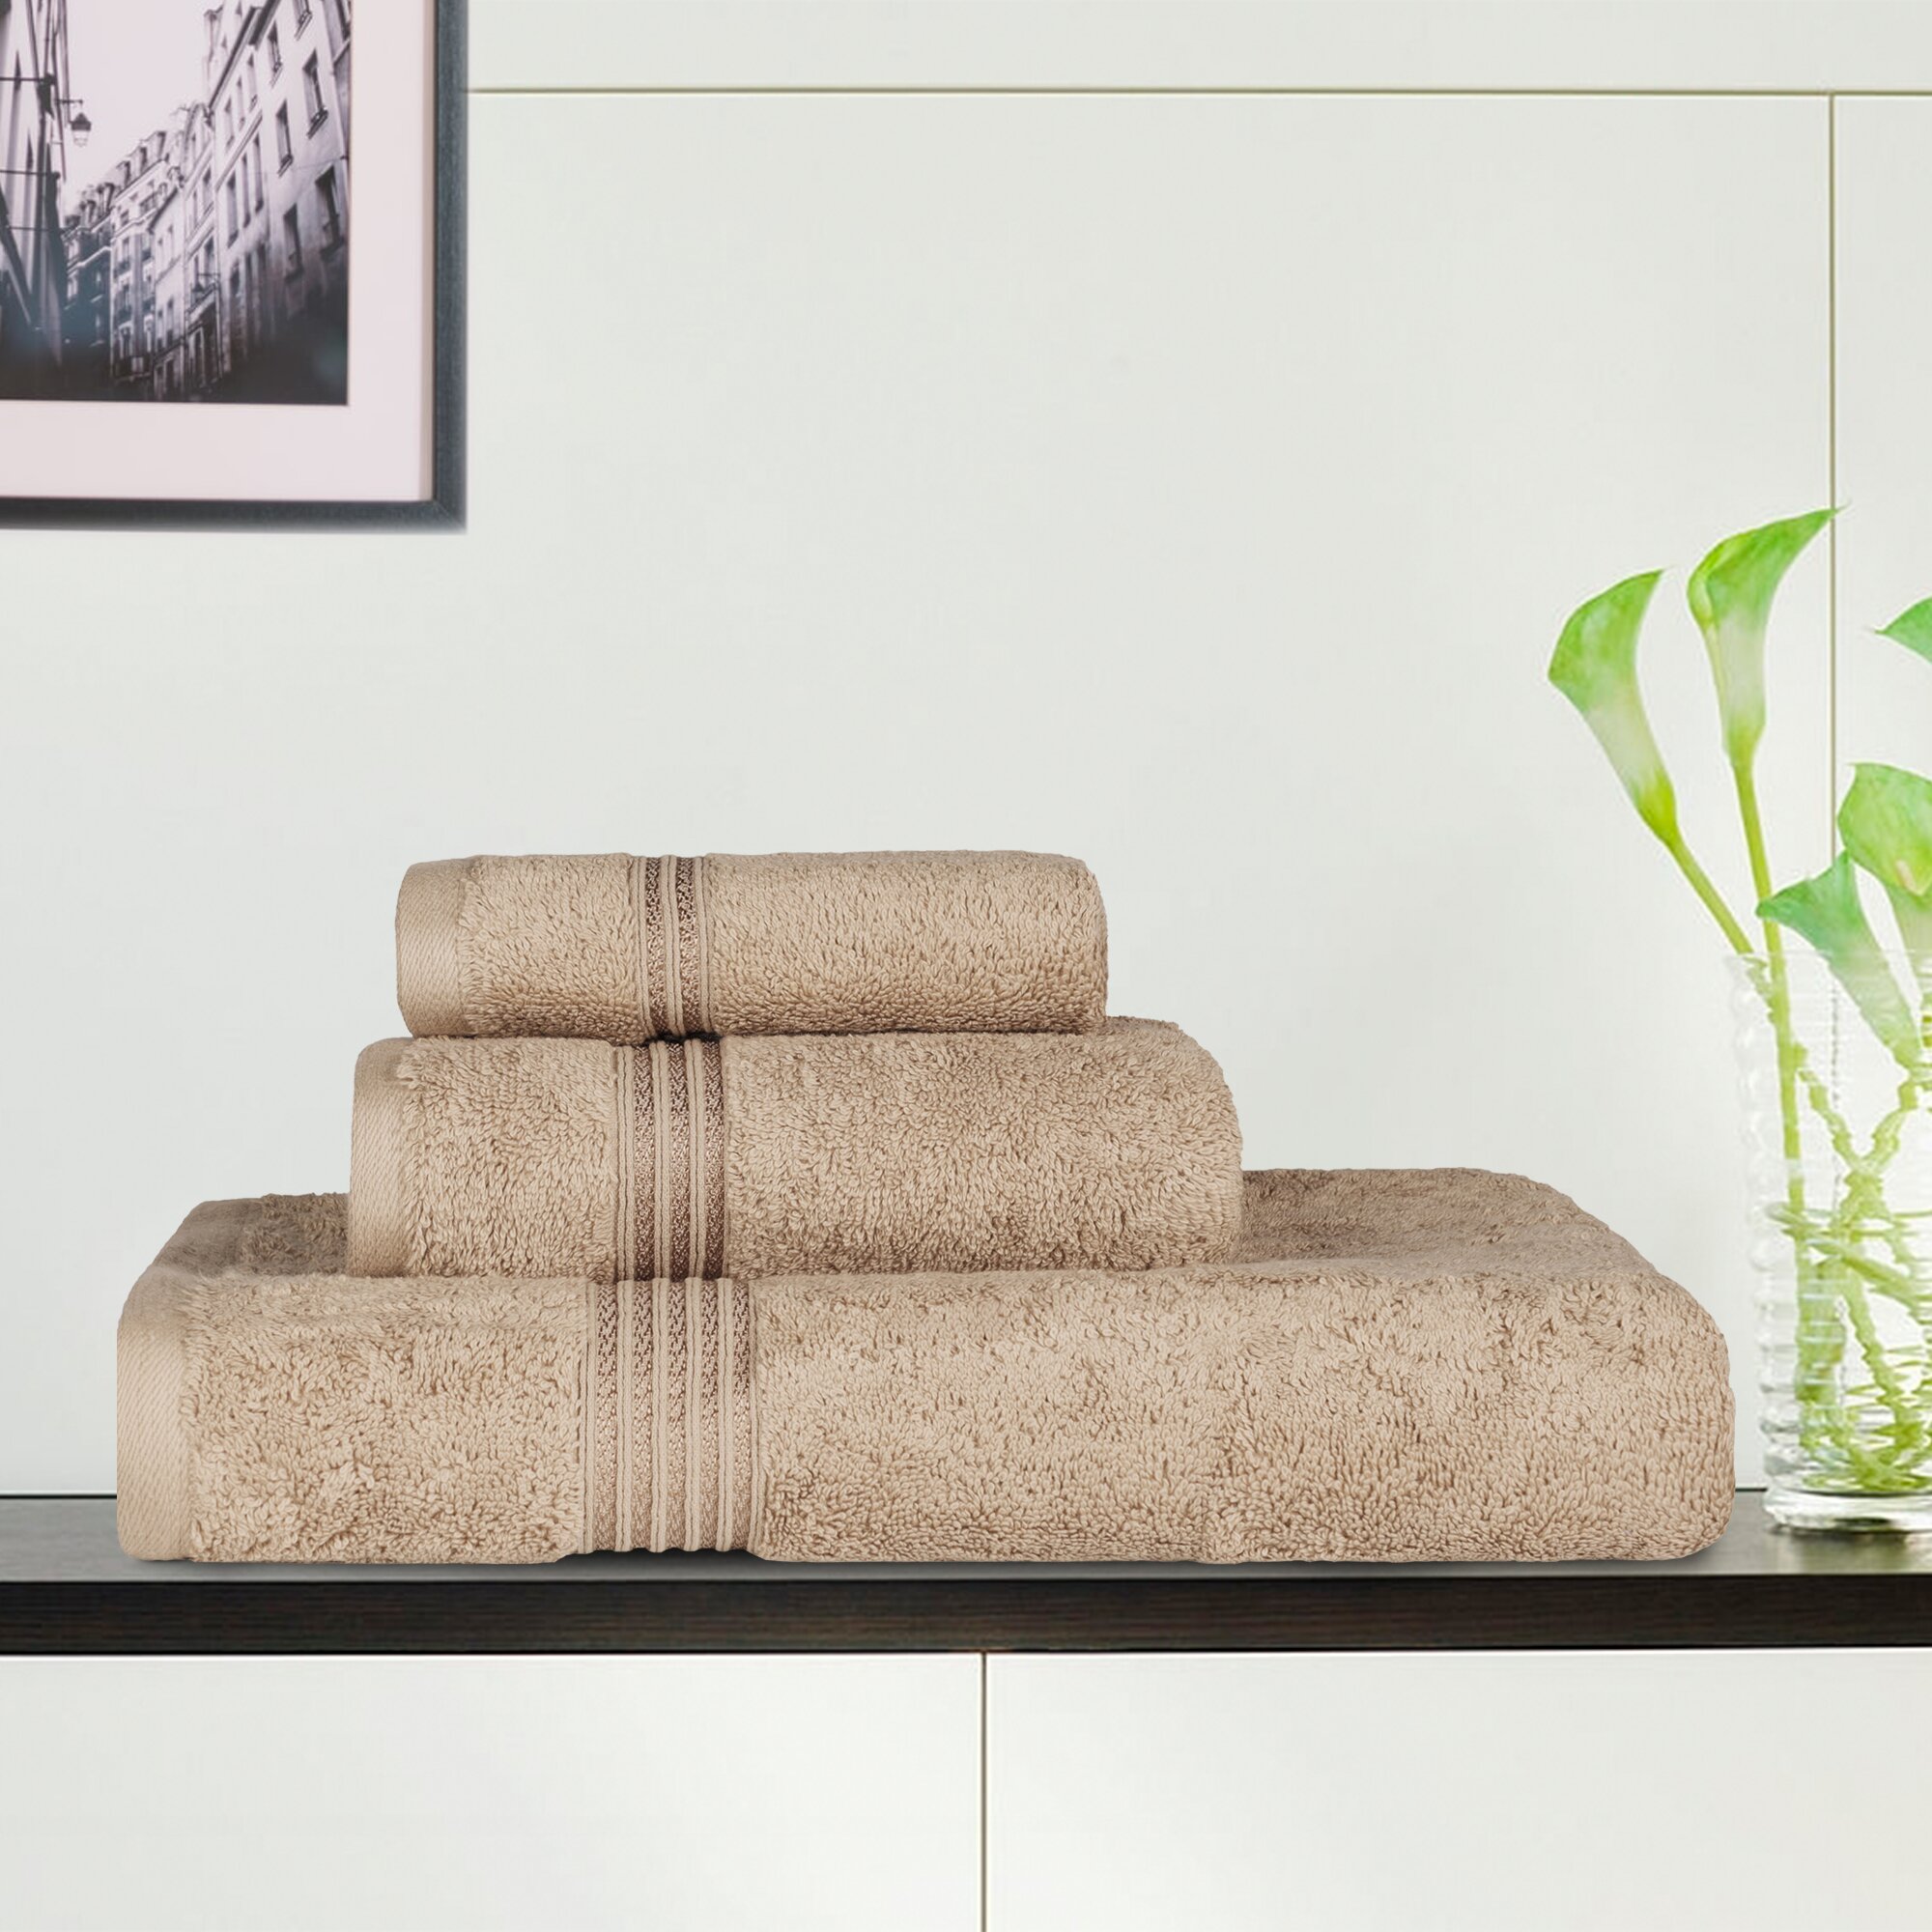 https://assets.wfcdn.com/im/14287692/compr-r85/1635/163550075/altom-600-gsm-egyptian-quality-cotton-3-piece-towel-set.jpg